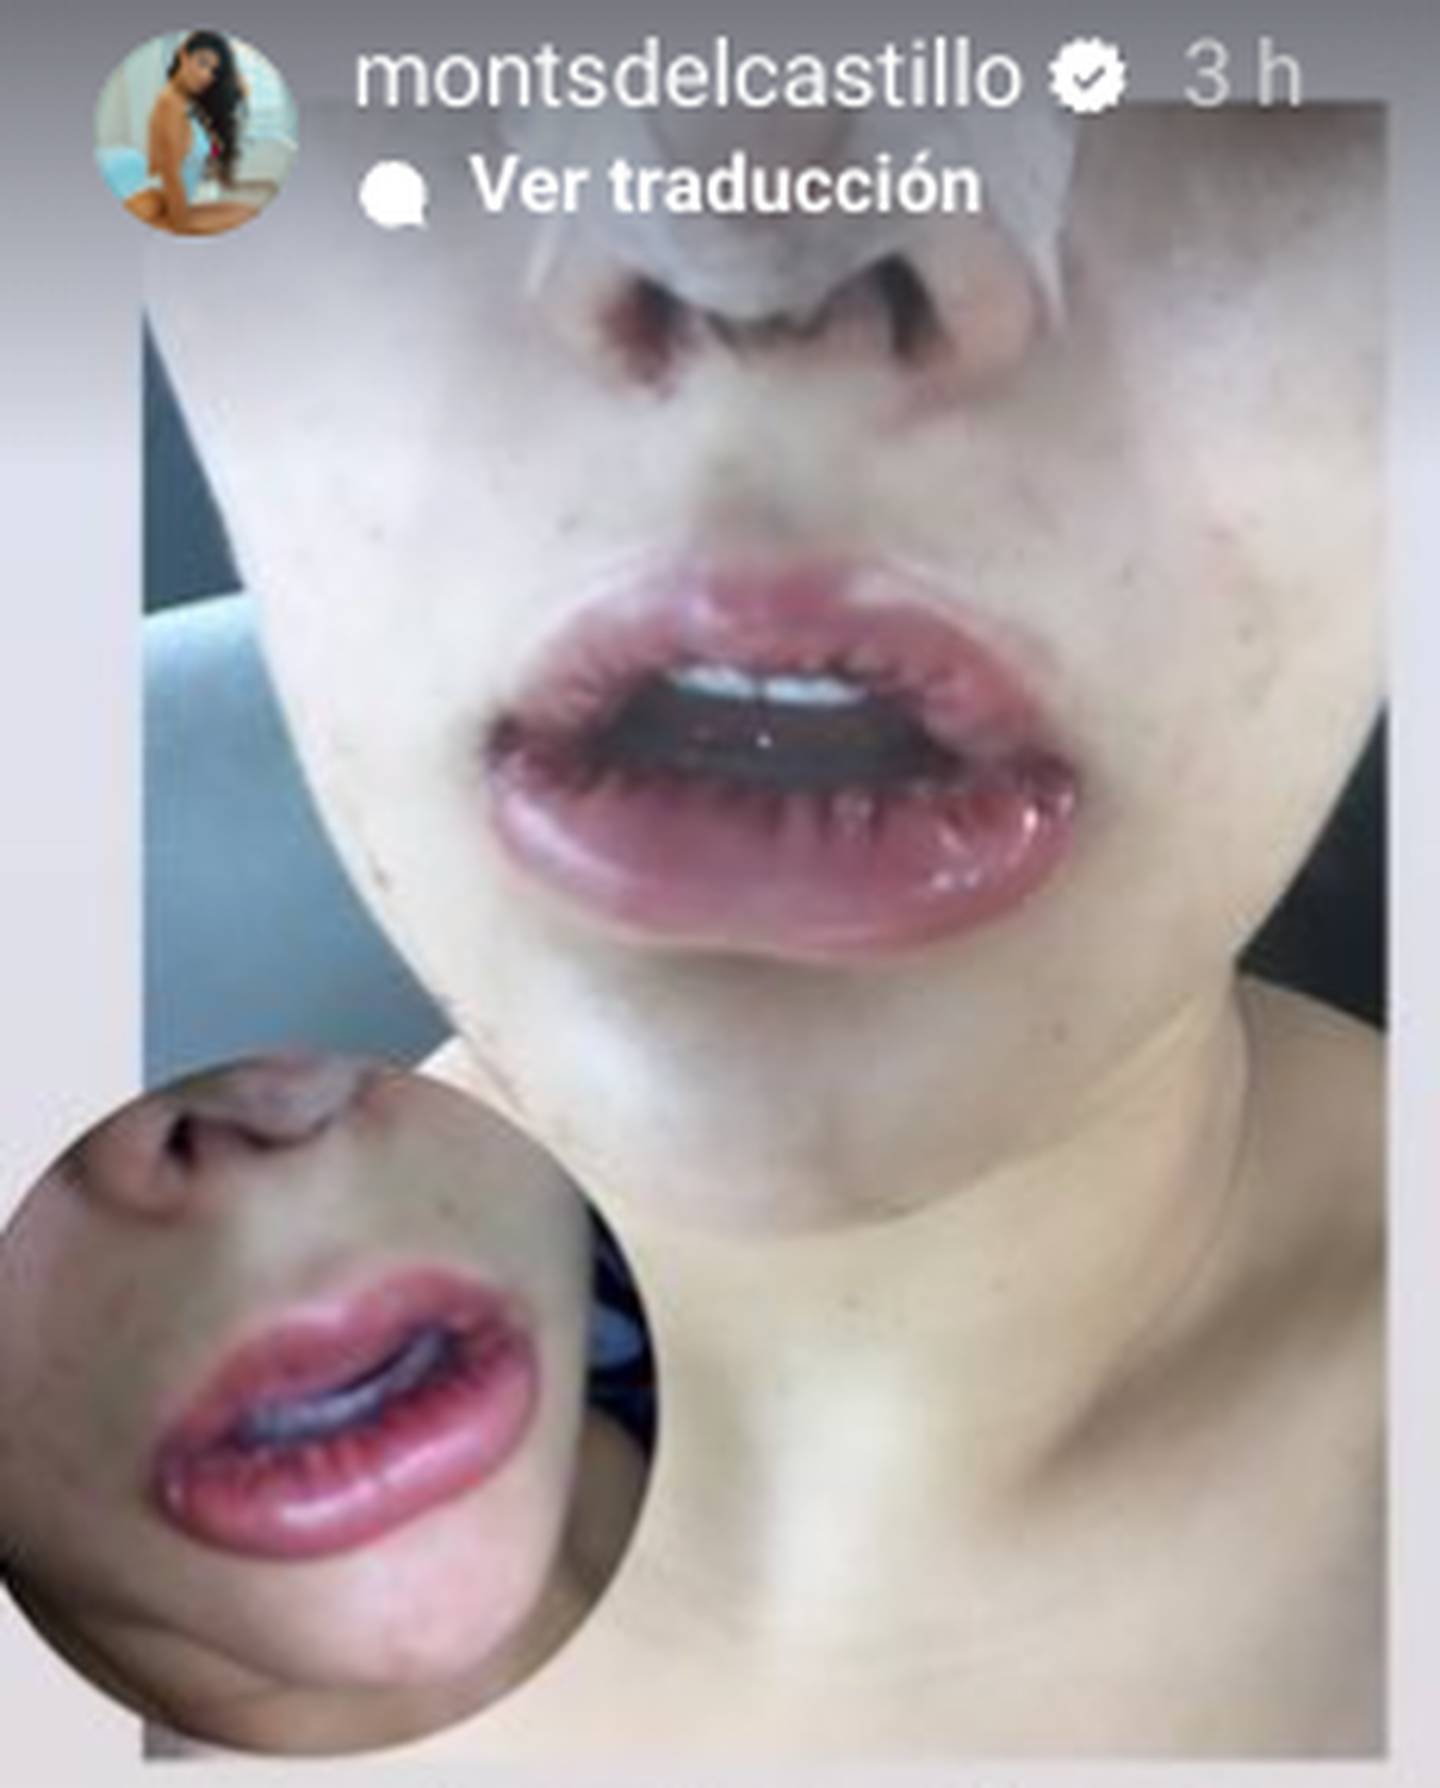 Montserrat Del Castillo y su ruda confesión sobre su cirugía estética en sus labios.